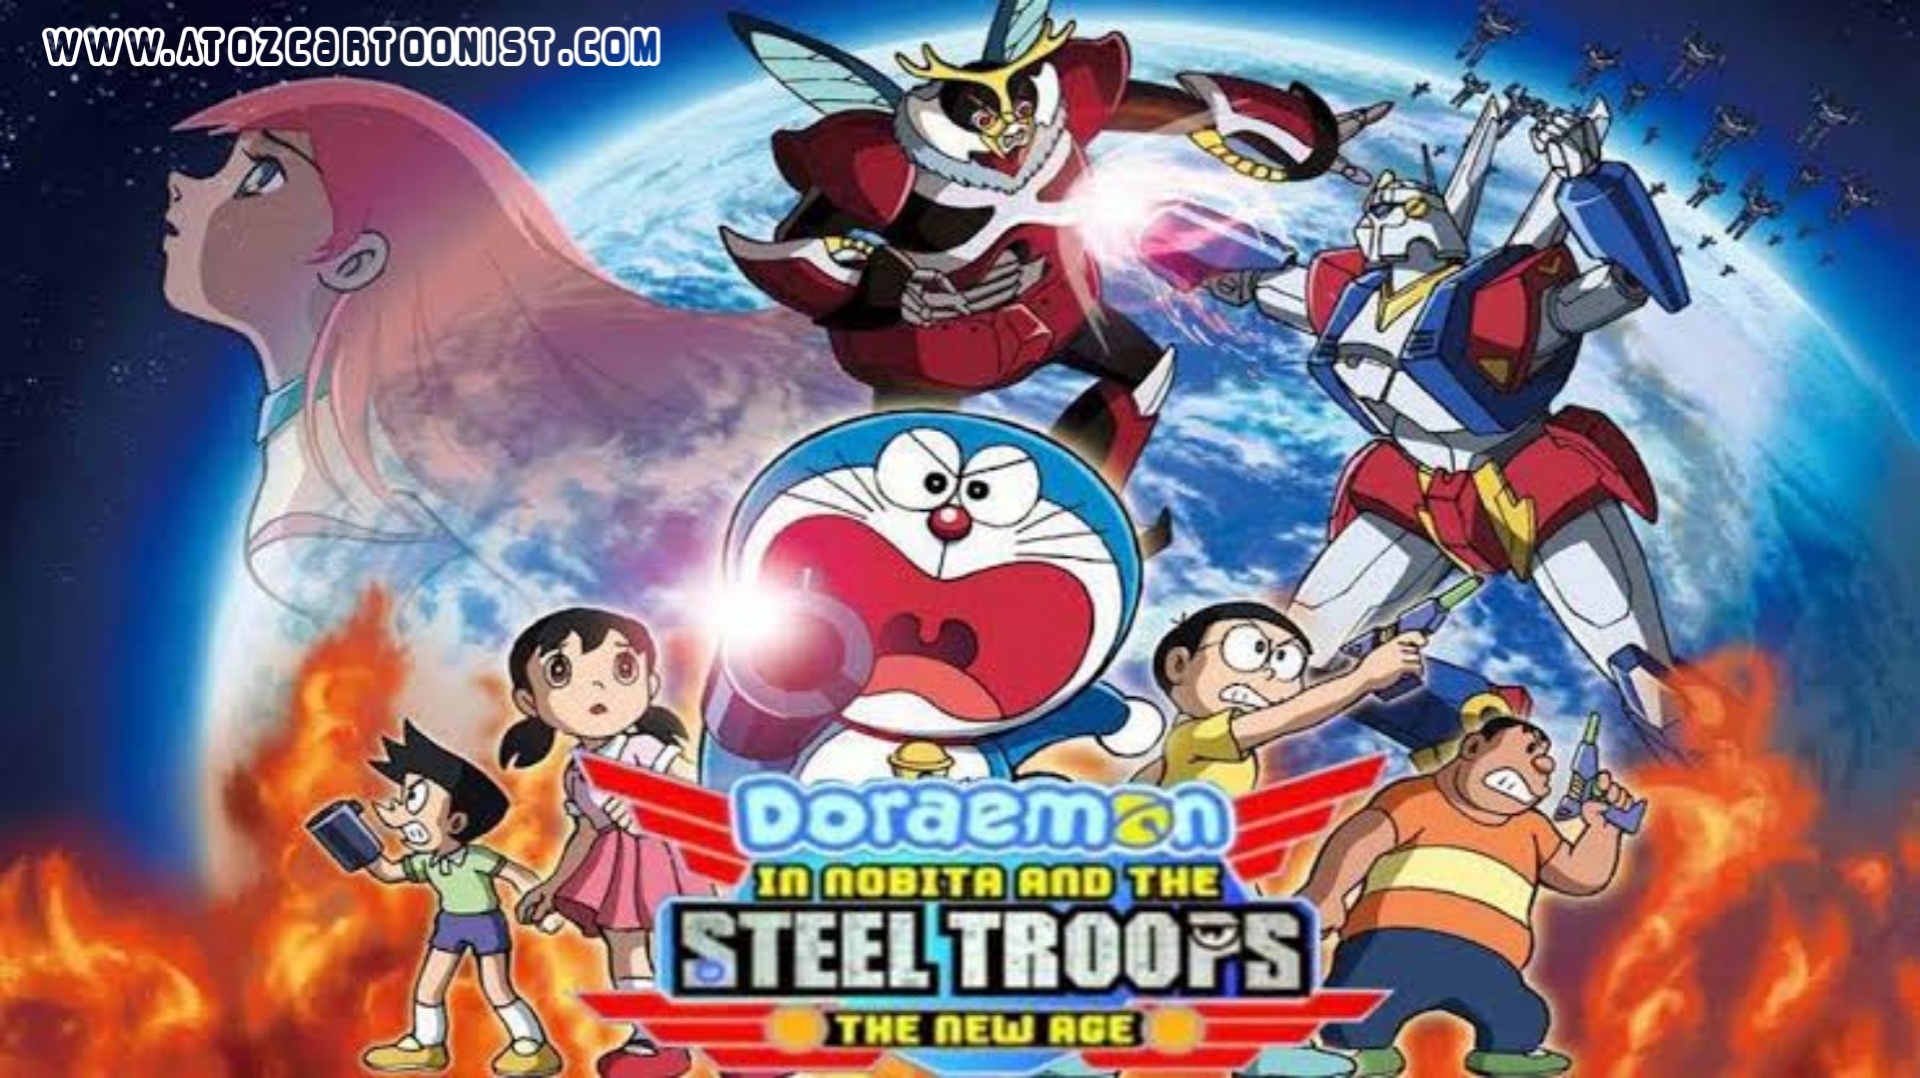 Doraemon and nobita steel troops in hindi movies